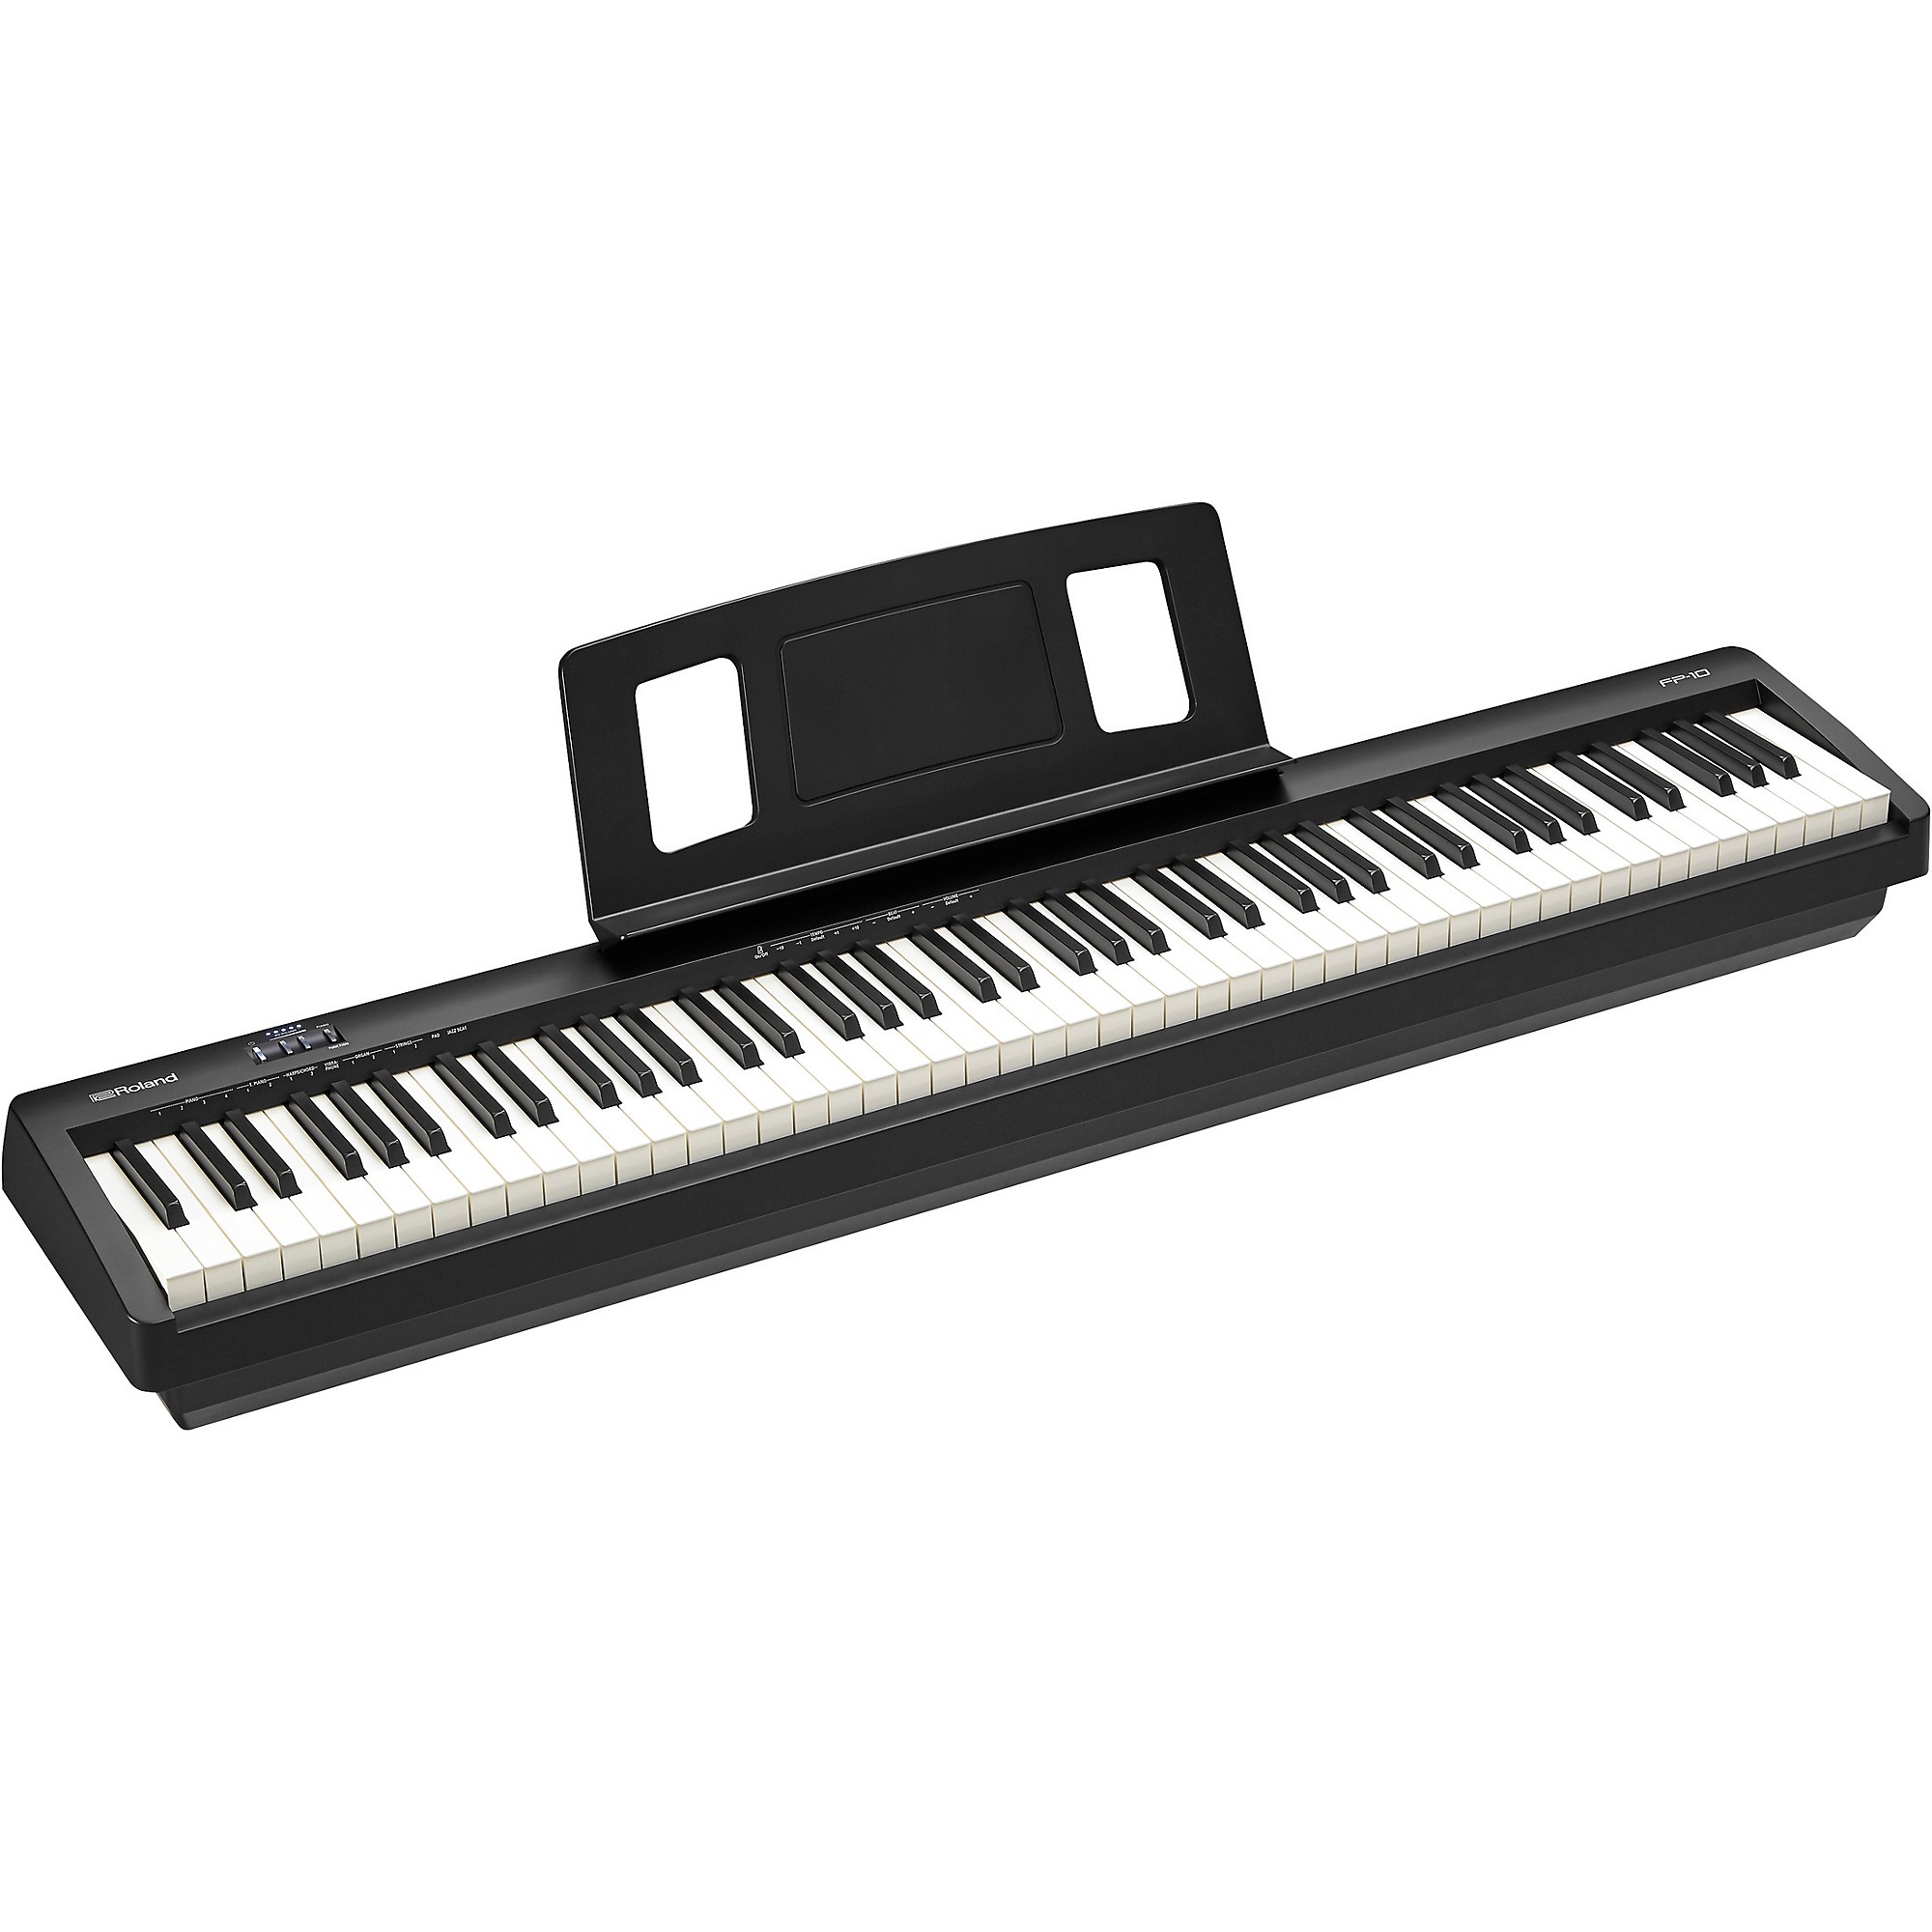 FP-10 Digital Piano | Guitar